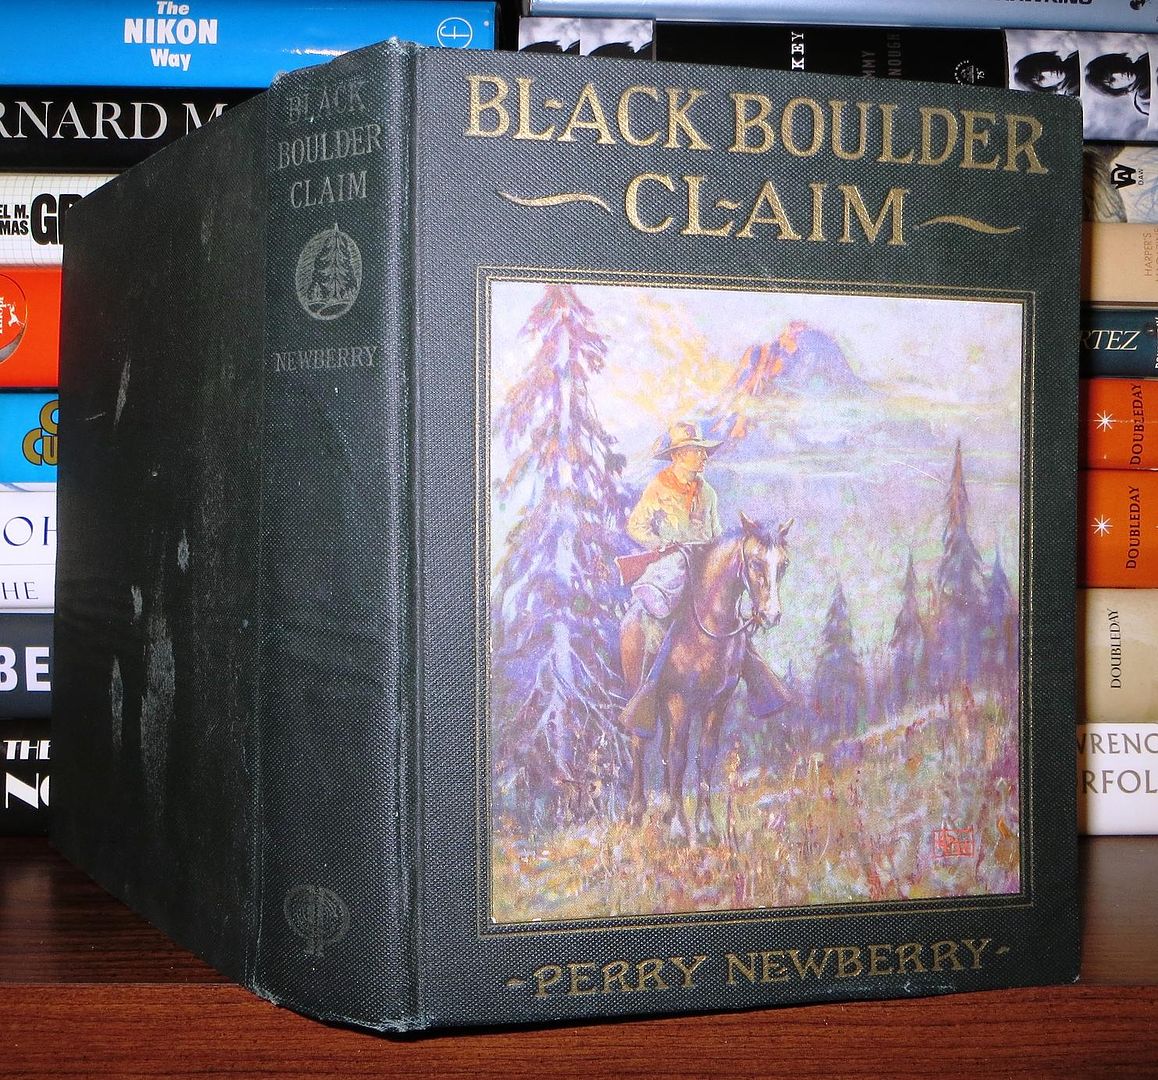 NEWBERRY, PERRY - Black Boulder Claim